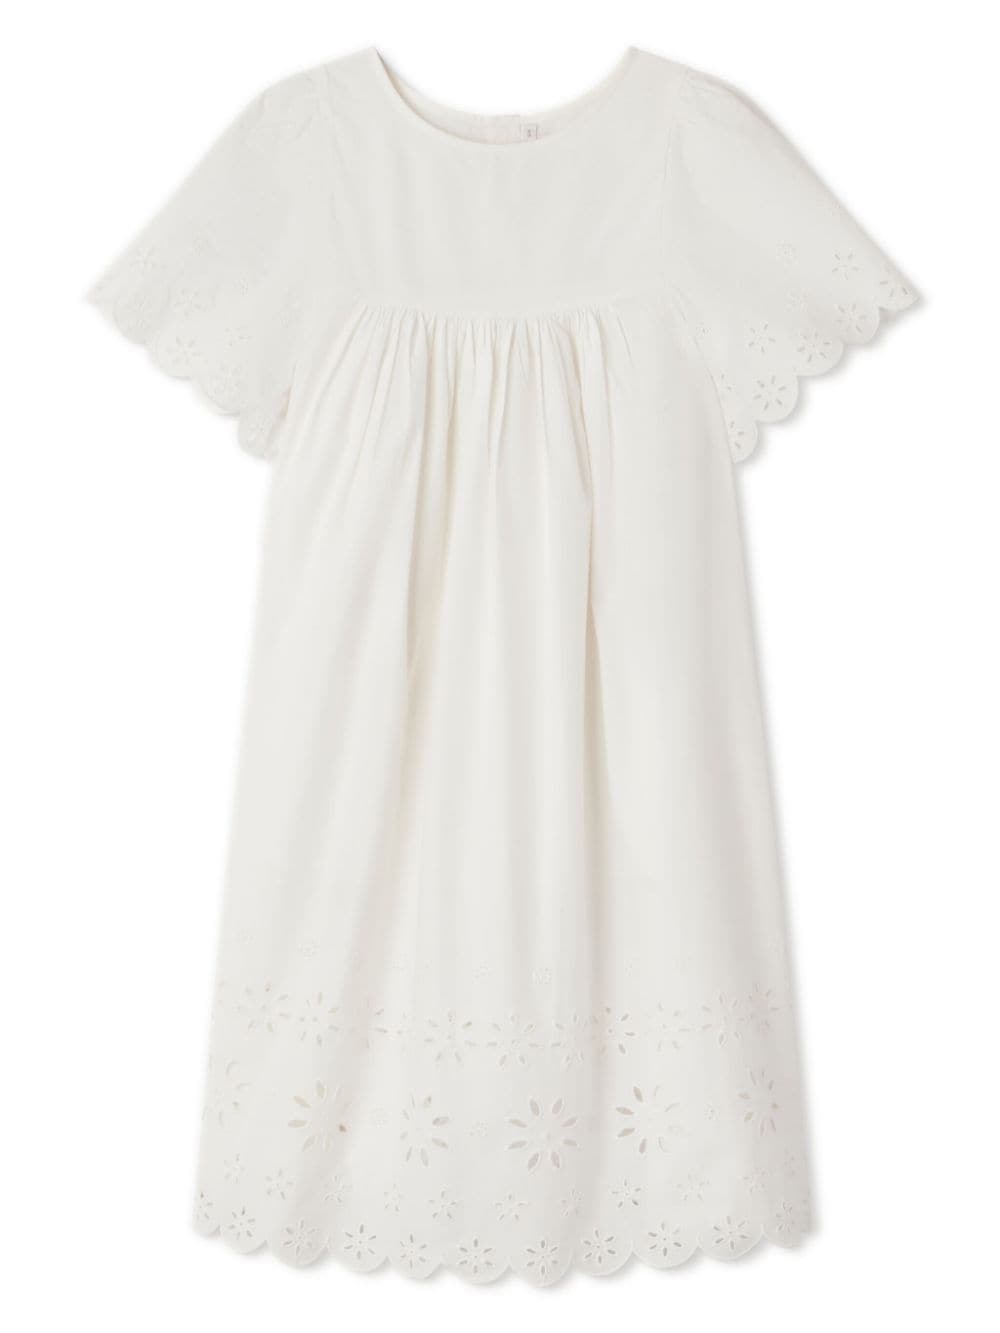 'Robe Francesca' dress